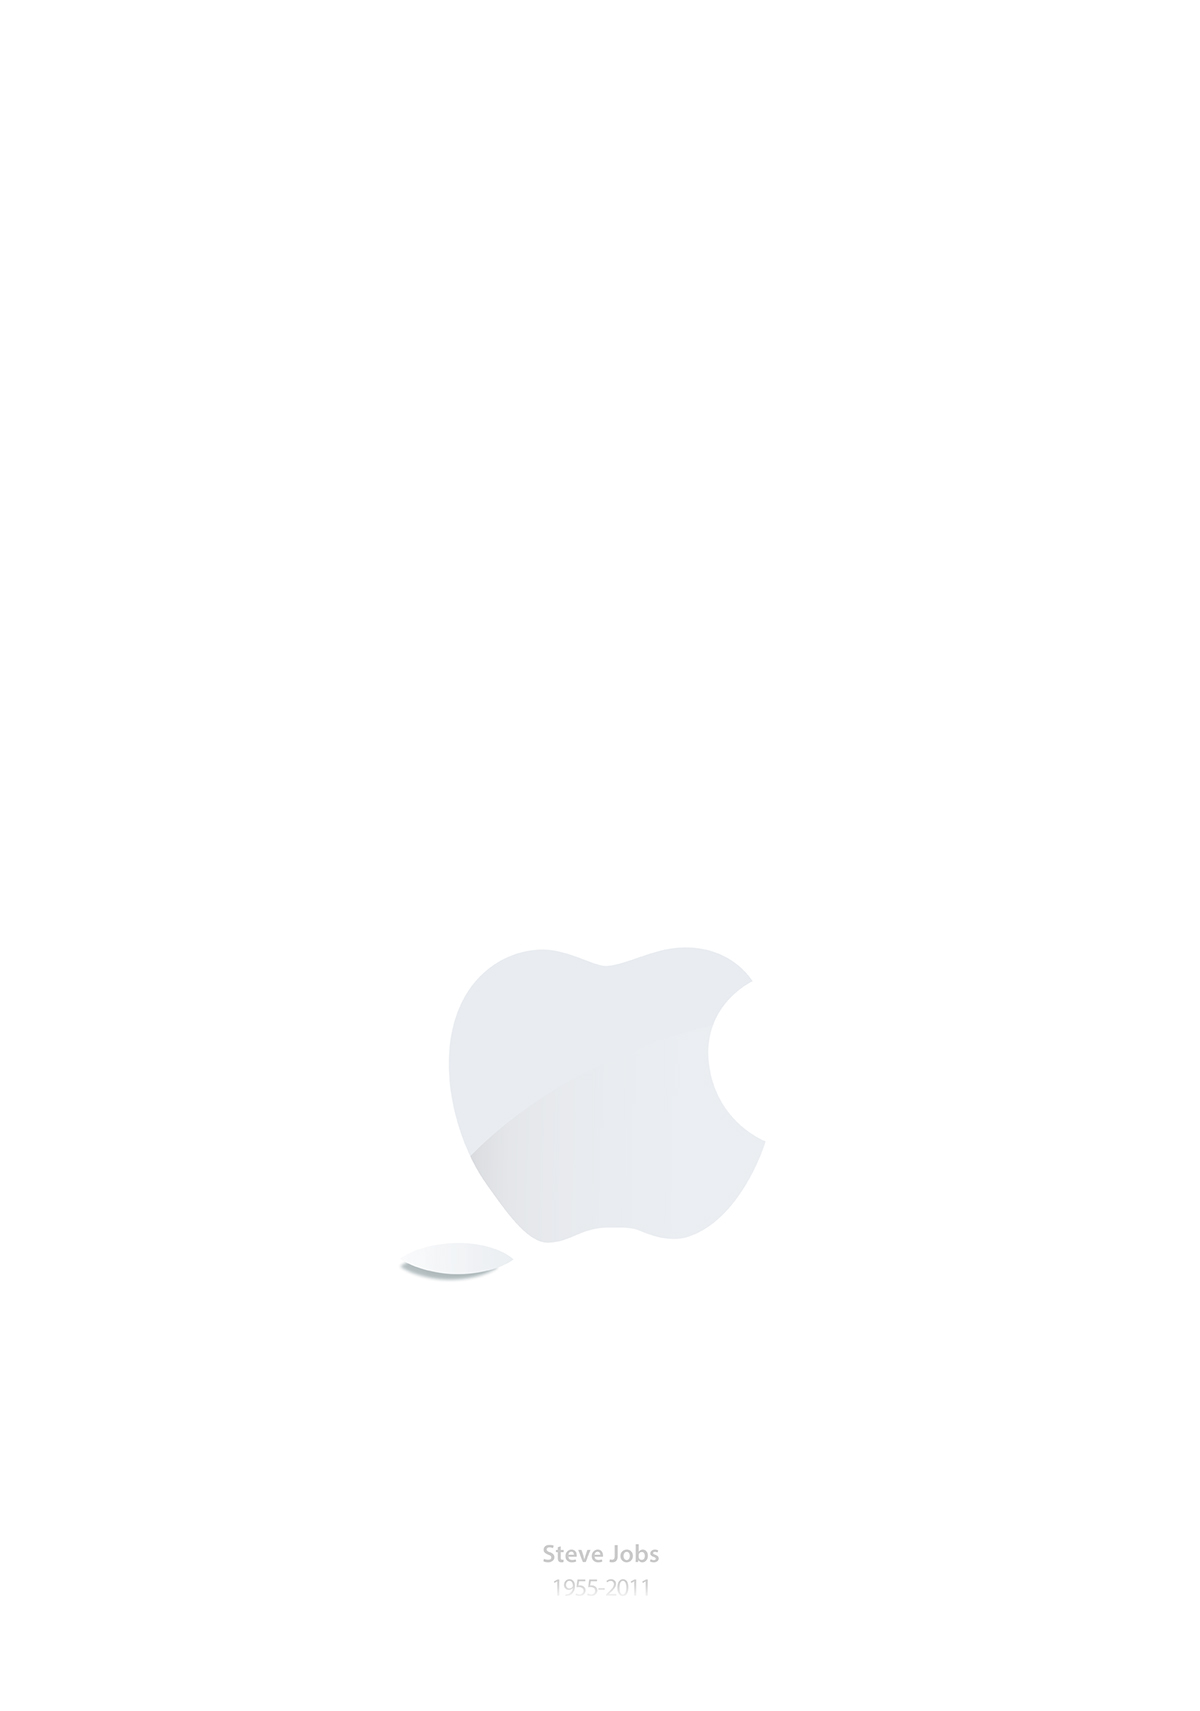 Steve Jobs 1955-2011 apple iphone iPad iMac